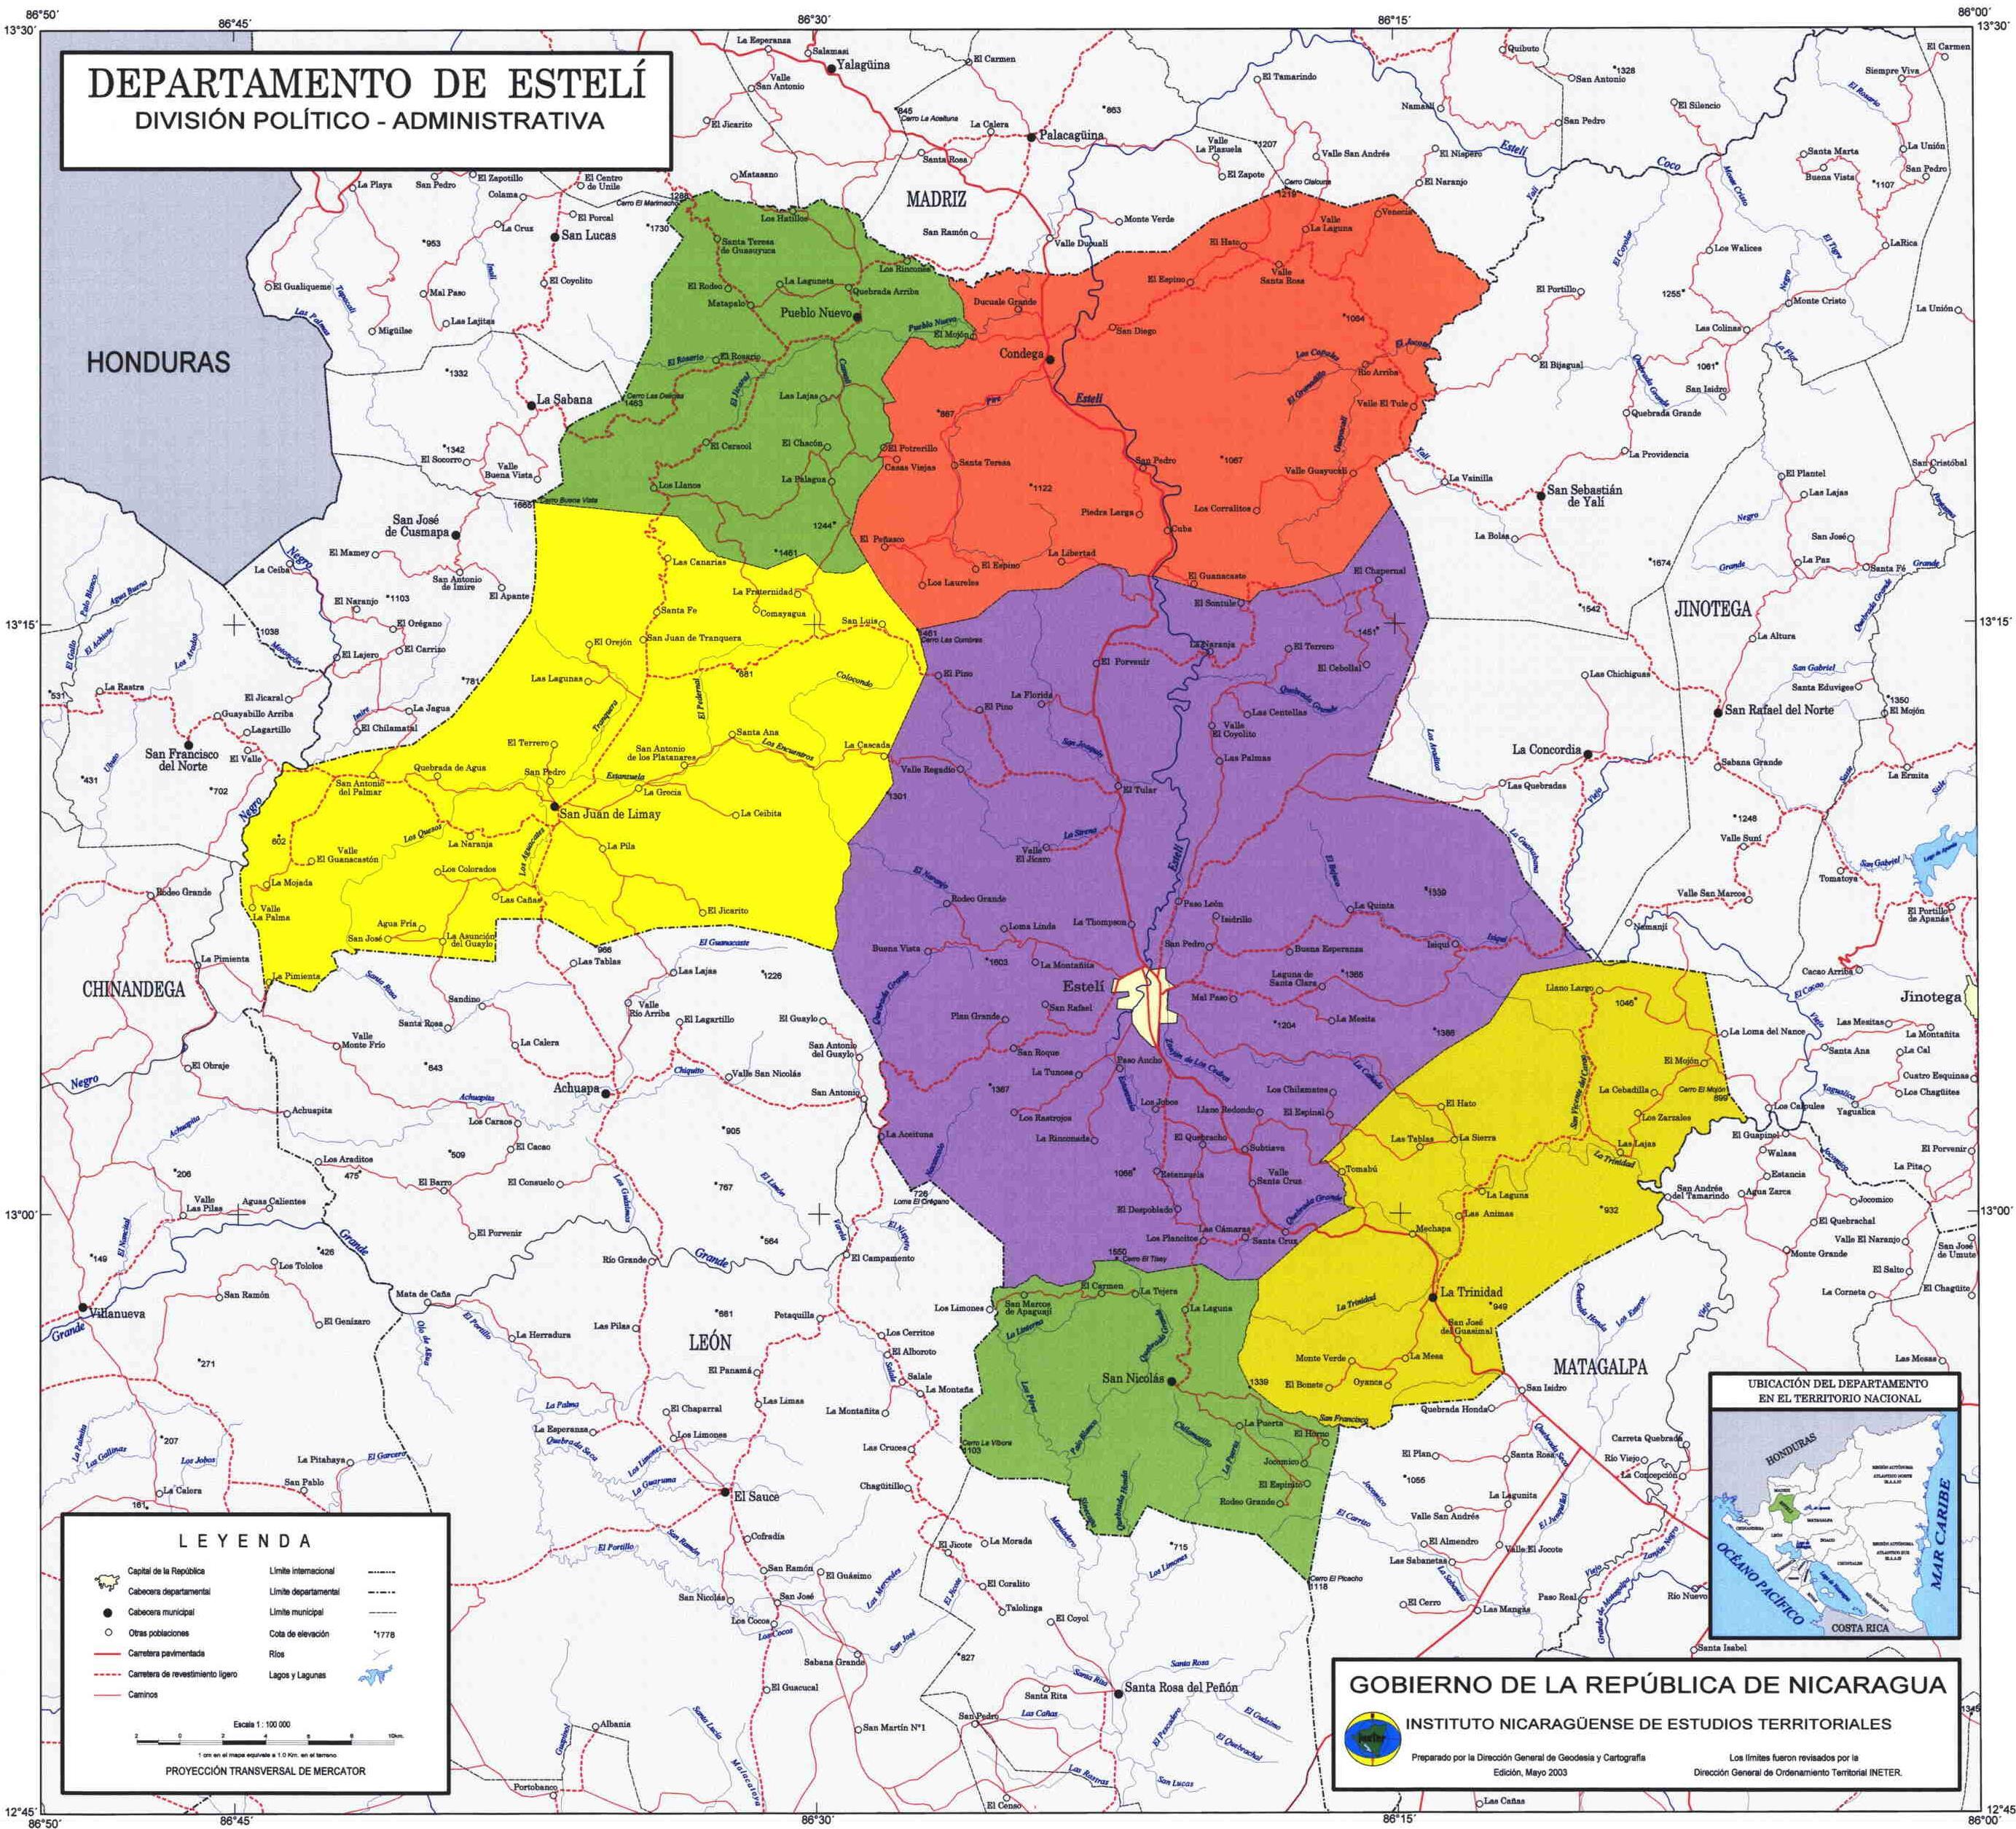 Mapa de Estelí, División Político-Administrativa del Departamento, Nicaragua